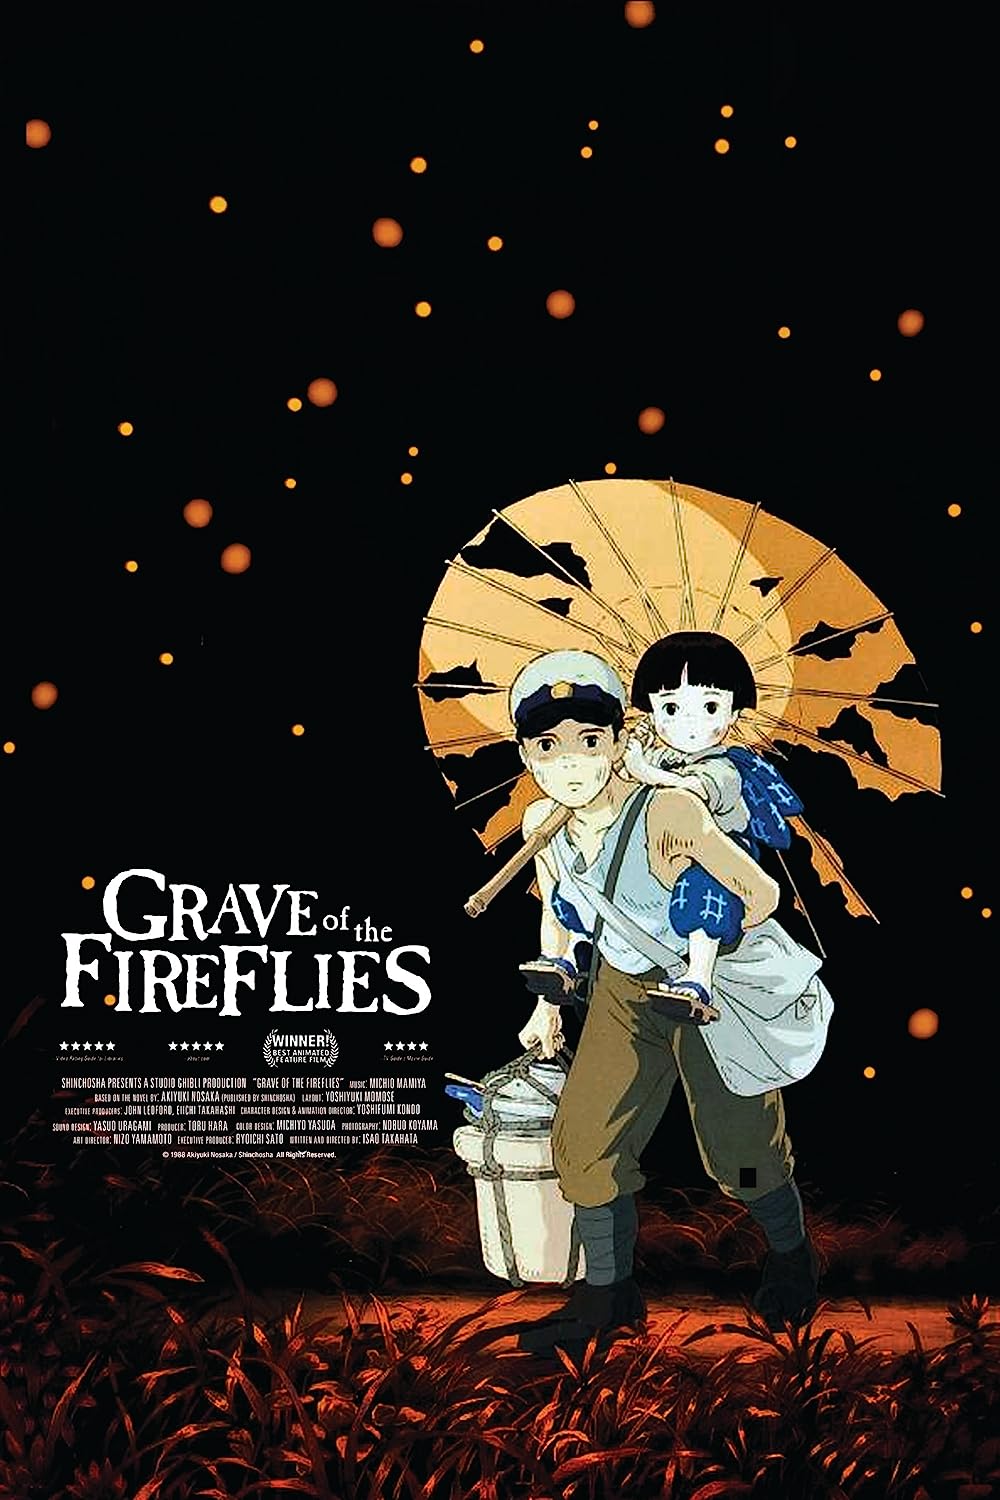 เรื่องราวอันน่าสะเทือนใจของพี่น้อง: บทวิจารณ์ภาพยนตร์เรื่อง "Grave of the Fireflies" (1988)